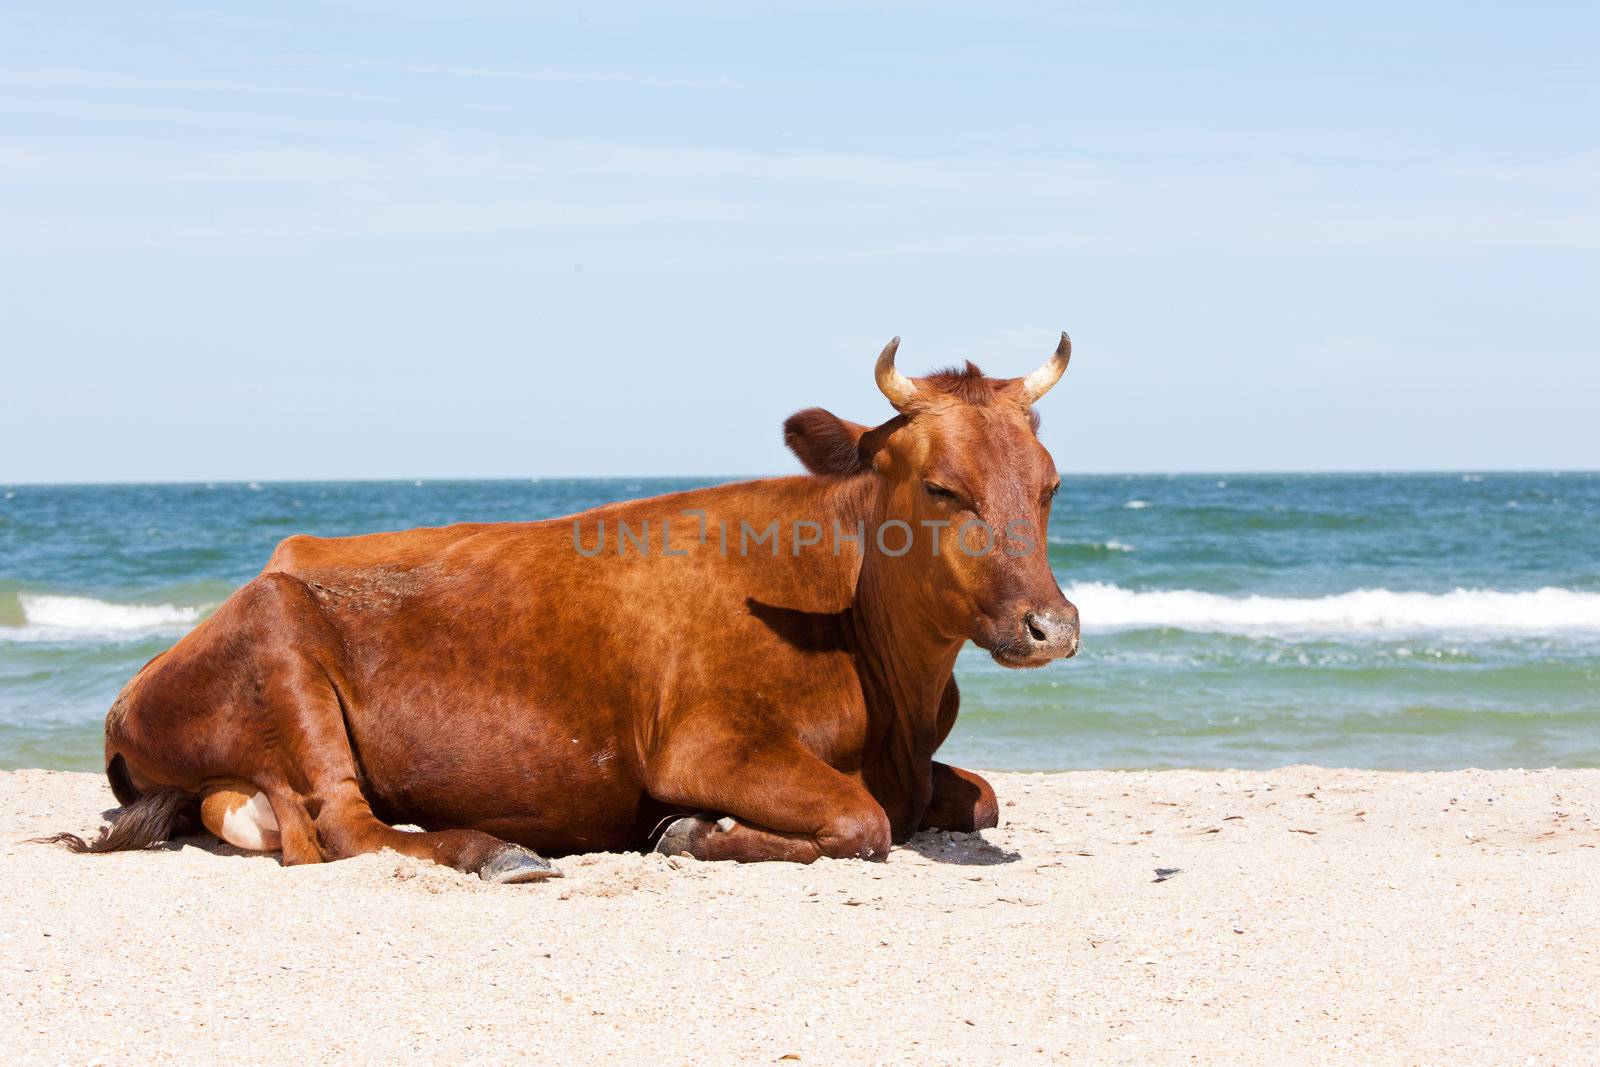 beach cow by agg